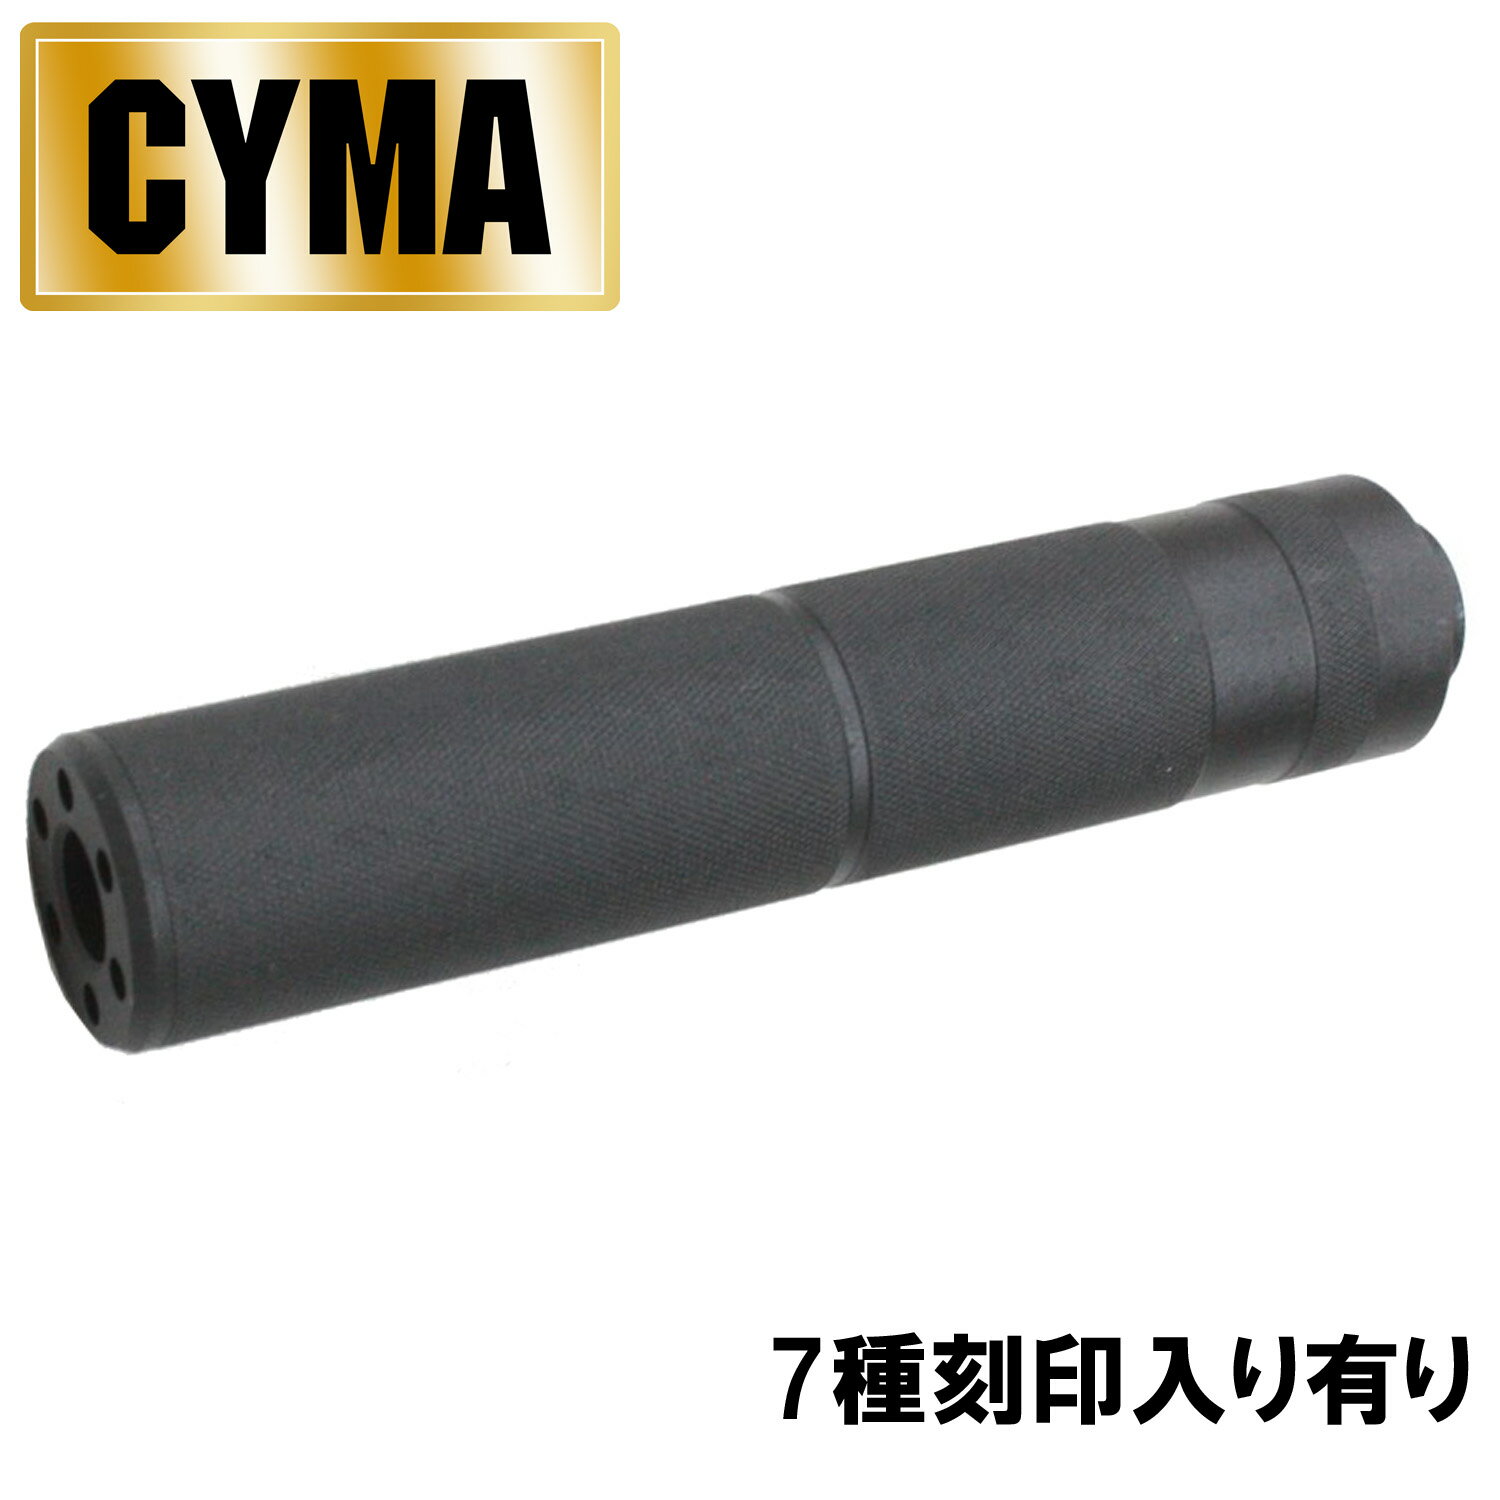 《2月1日再入荷商品》CYMA φ32mm 155mm サイレンサー